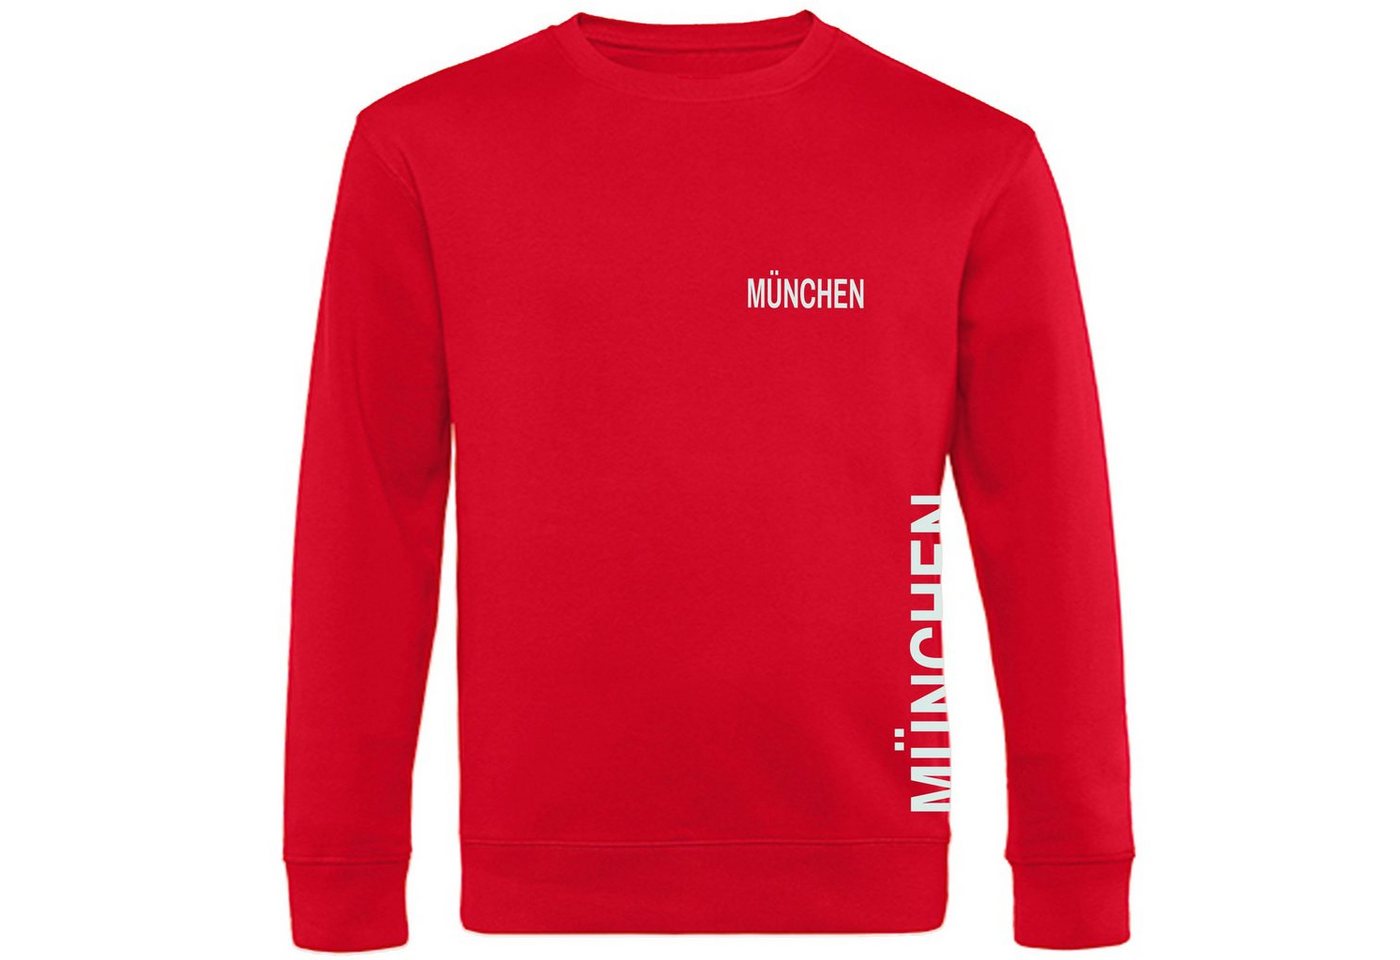 multifanshop Sweatshirt München rot - Brust & Seite - Pullover von multifanshop